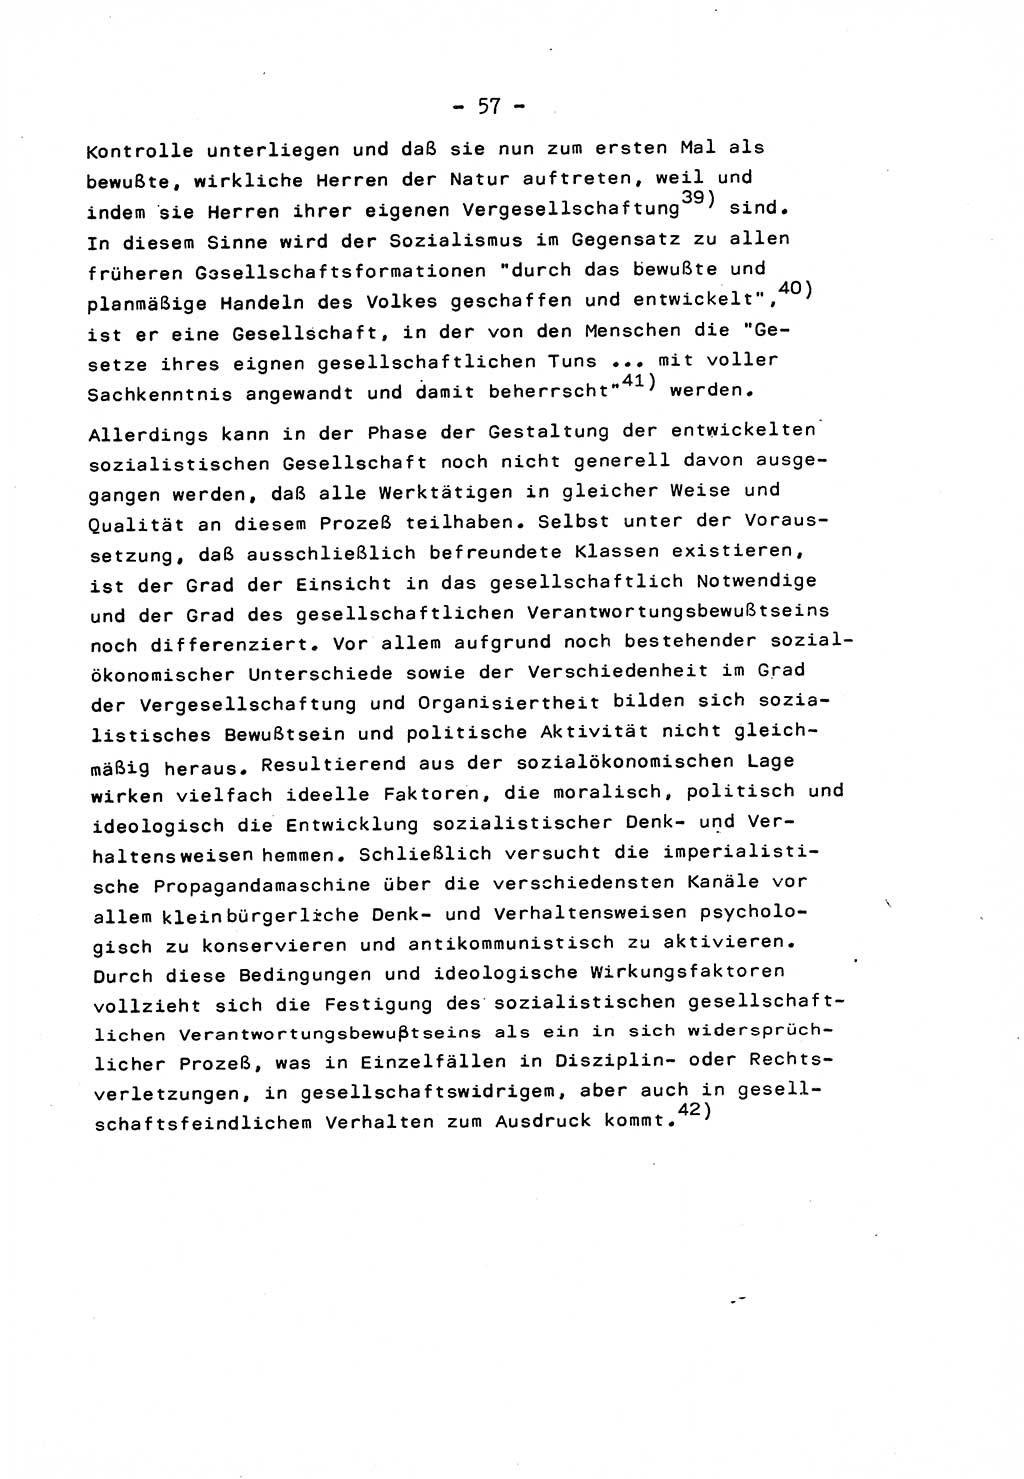 Marxistisch-leninistische Staats- und Rechtstheorie [Deutsche Demokratische Republik (DDR)] 1975, Seite 57 (ML St.-R.-Th. DDR 1975, S. 57)